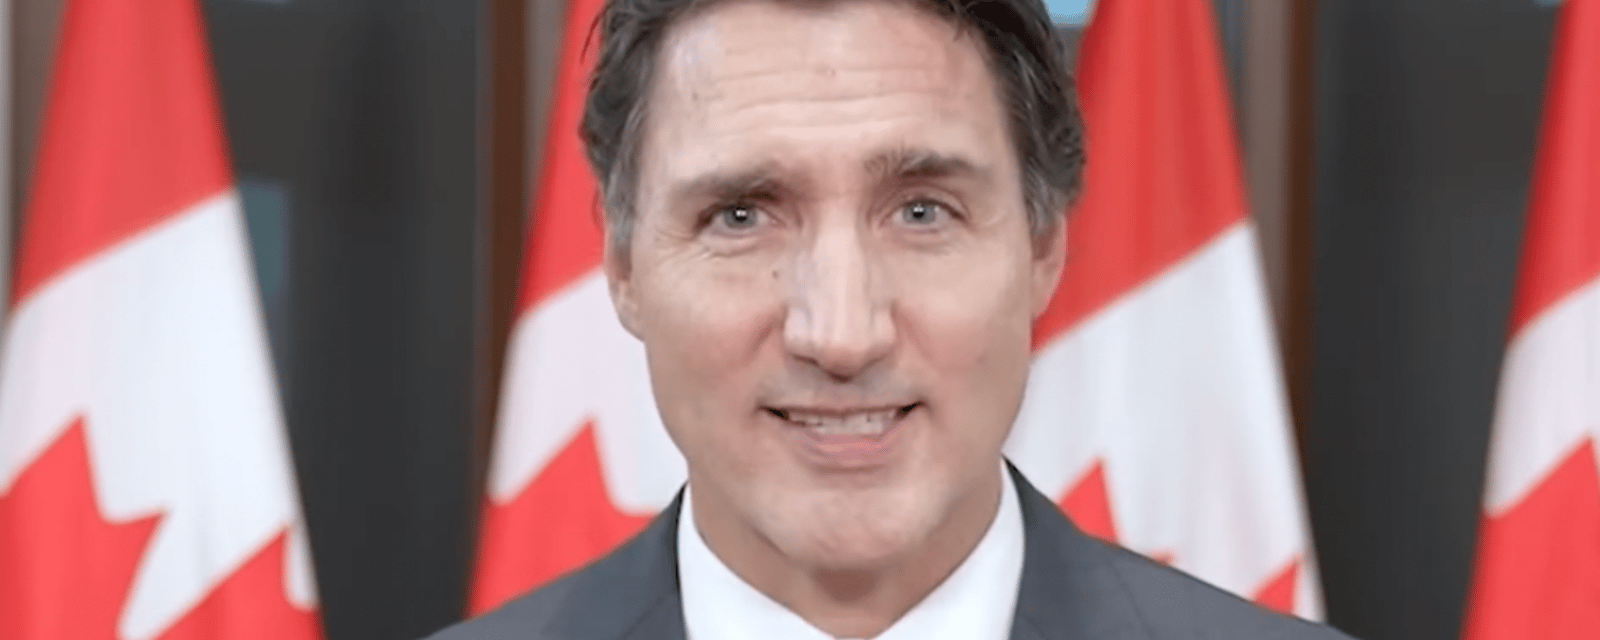 Le gouvernement Trudeau fait une grande annonce qui va changer la vie de nombreux enfants canadiens